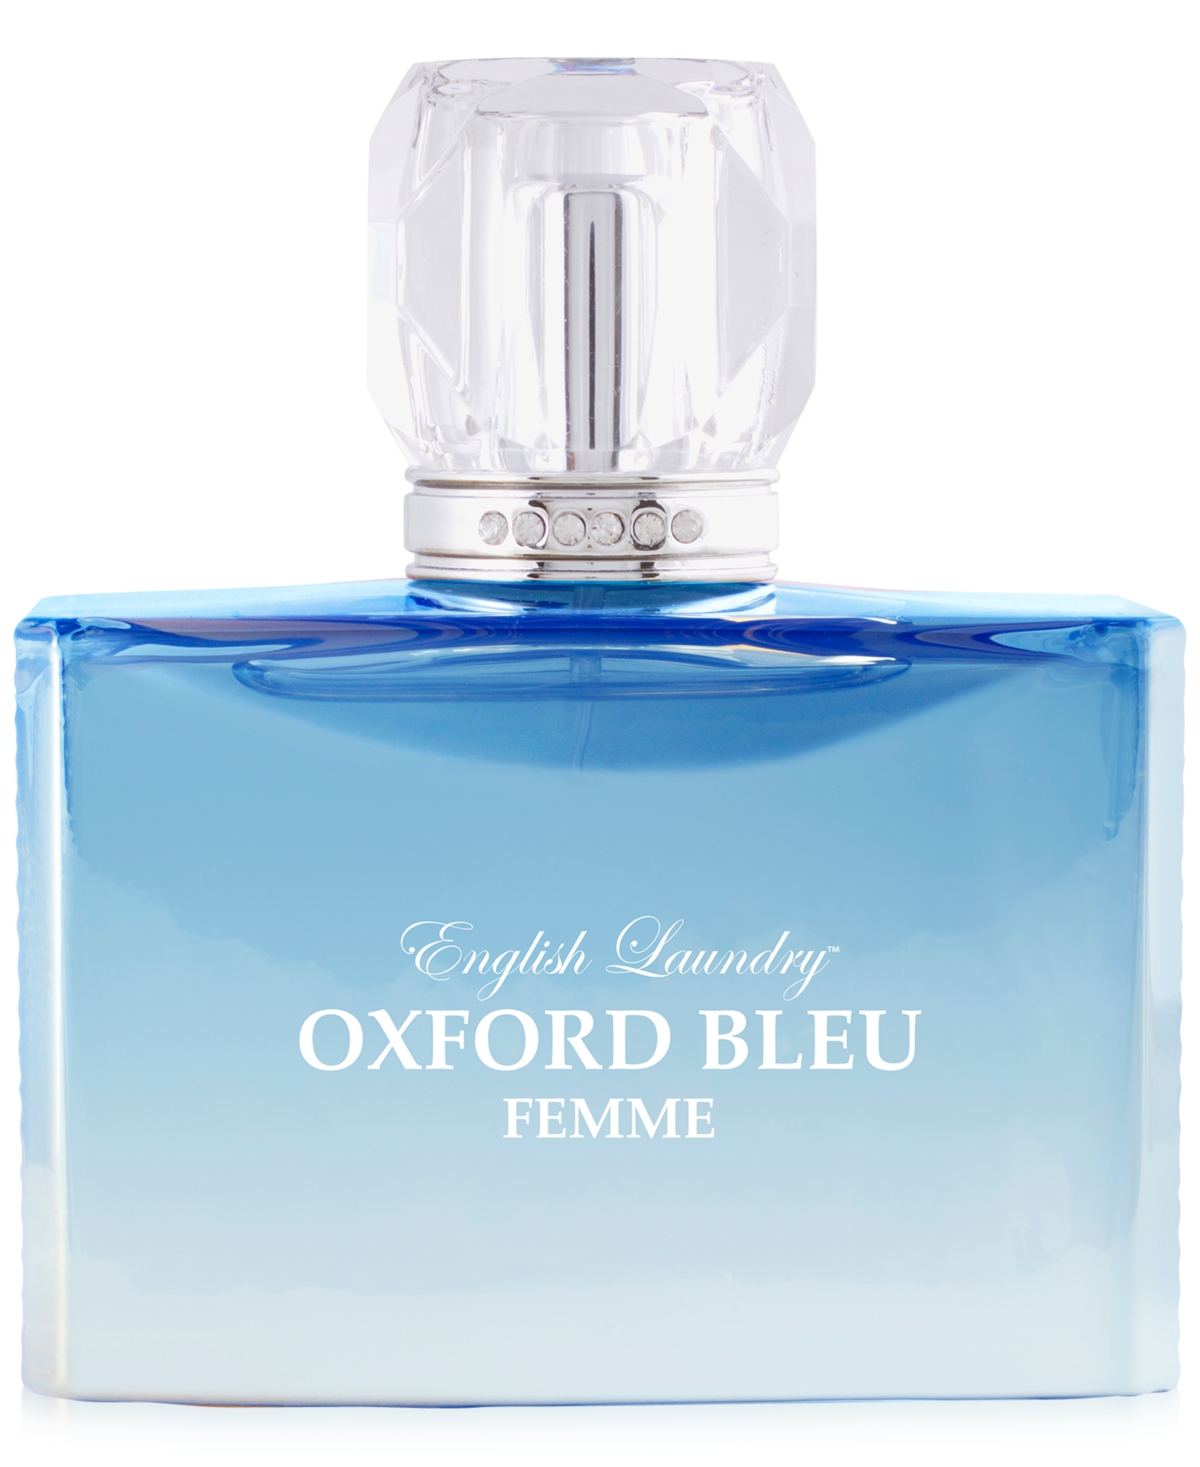 Oxford Bleu Femme Eau de Parfum, 3.4 oz